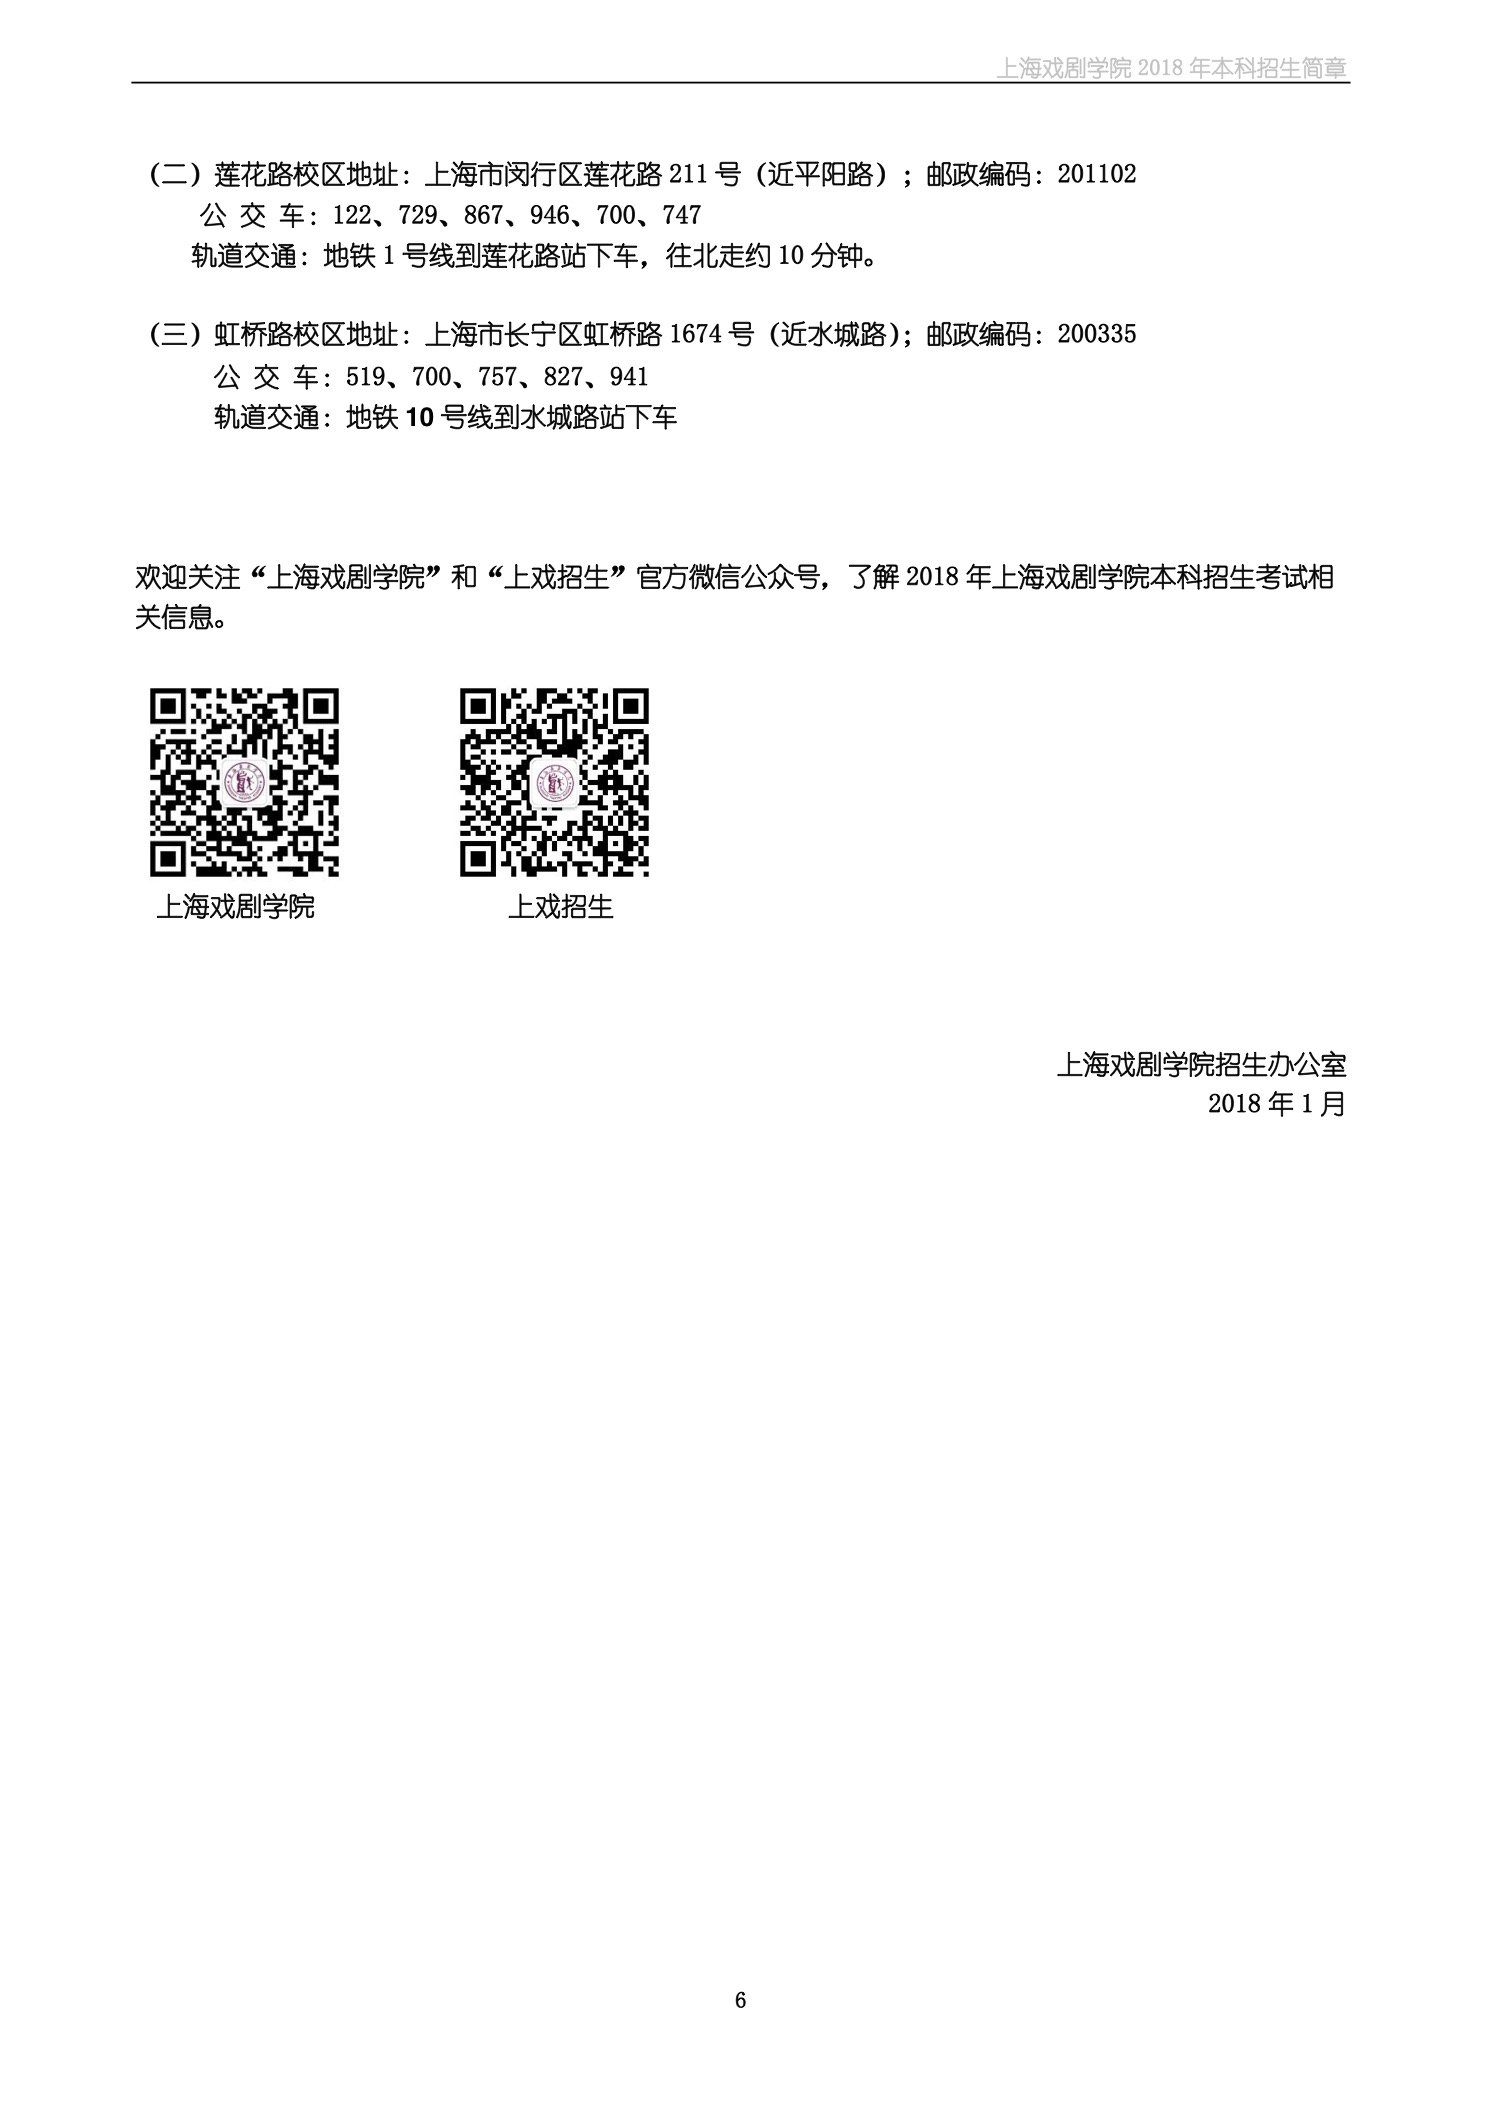 上海戏剧学院2018年本科招生简章-page6.jpeg